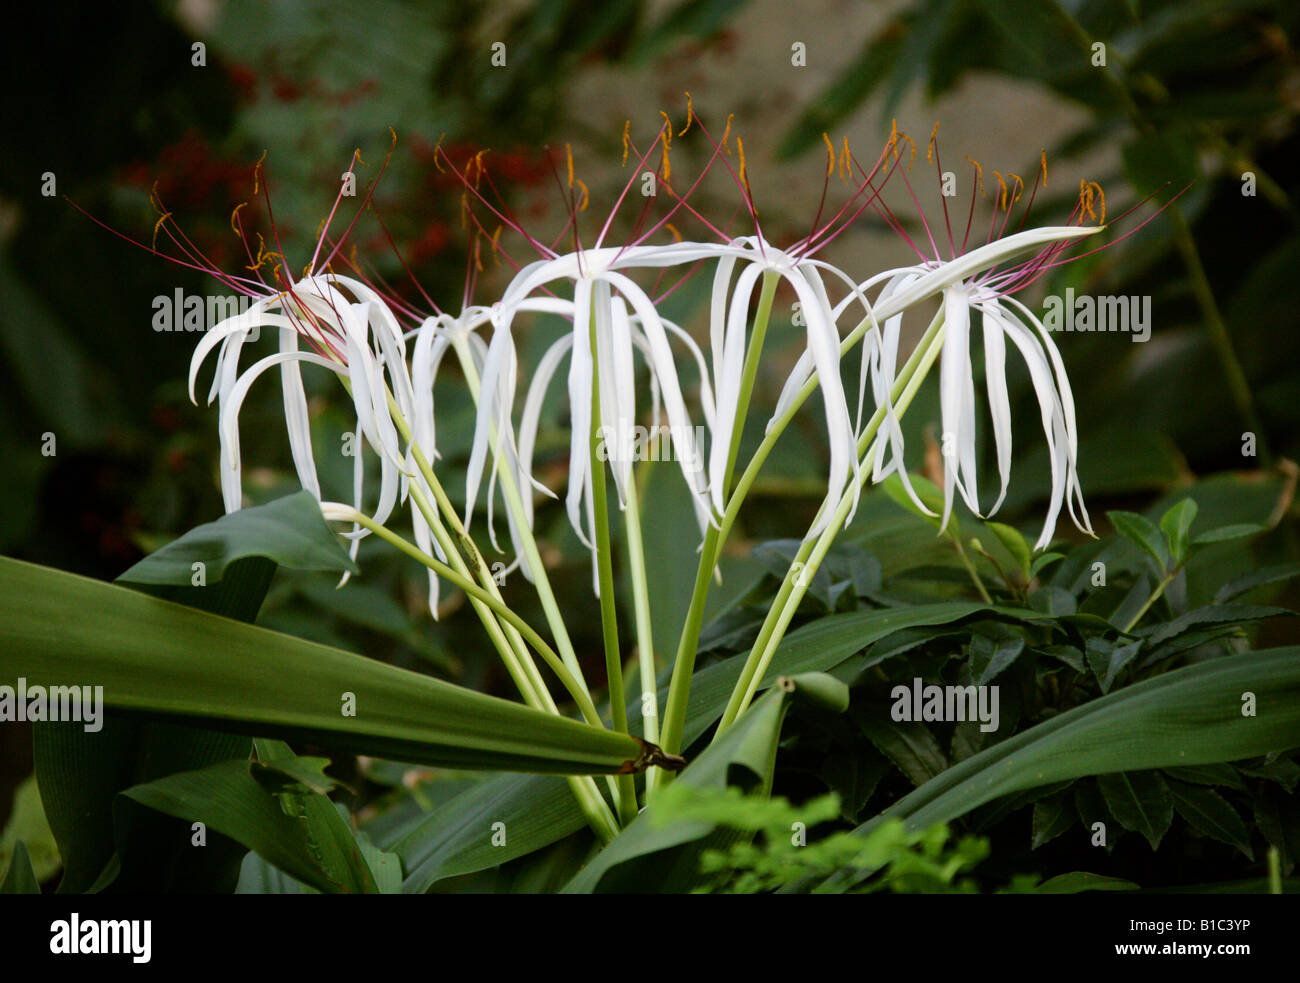 Riesige Spinne Lilie Crinum Asiaticum Amaryllisgewächse.  Ryukyu-Inseln, China, Hong Kong, Indien und Japan. Stockfoto